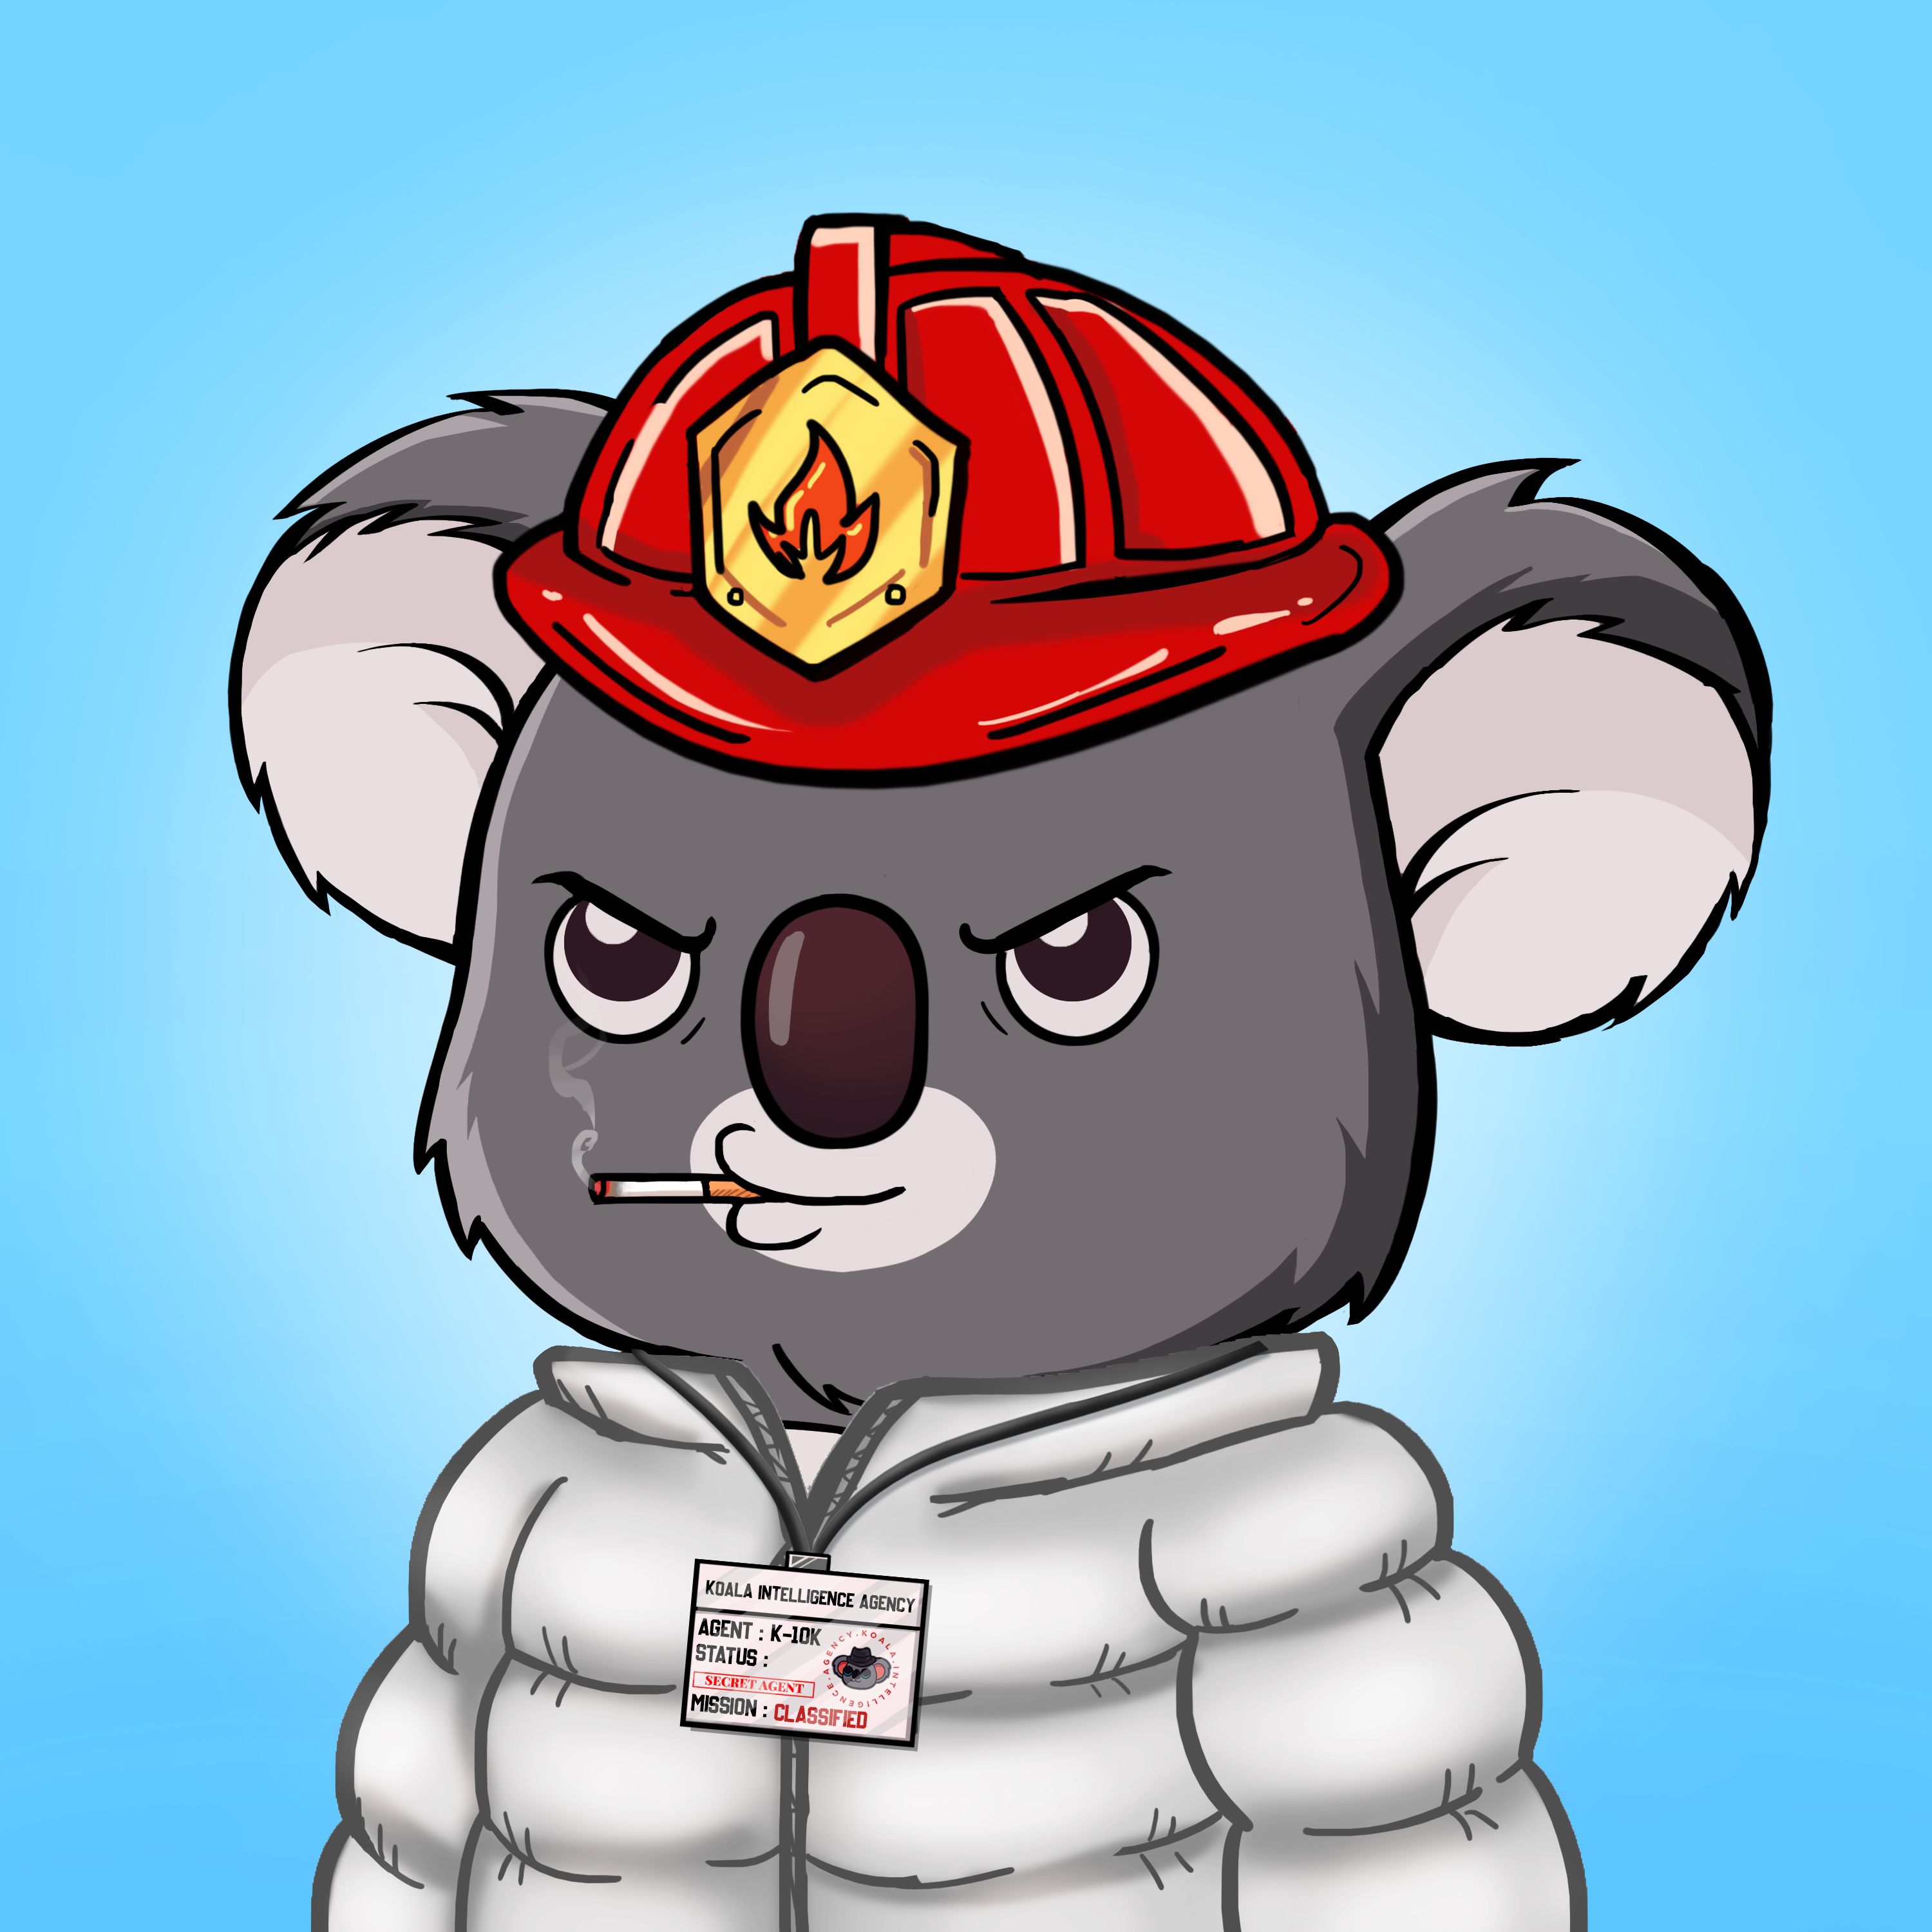 Koala Agent #7208 - Koala Intelligence Agency | OpenSea